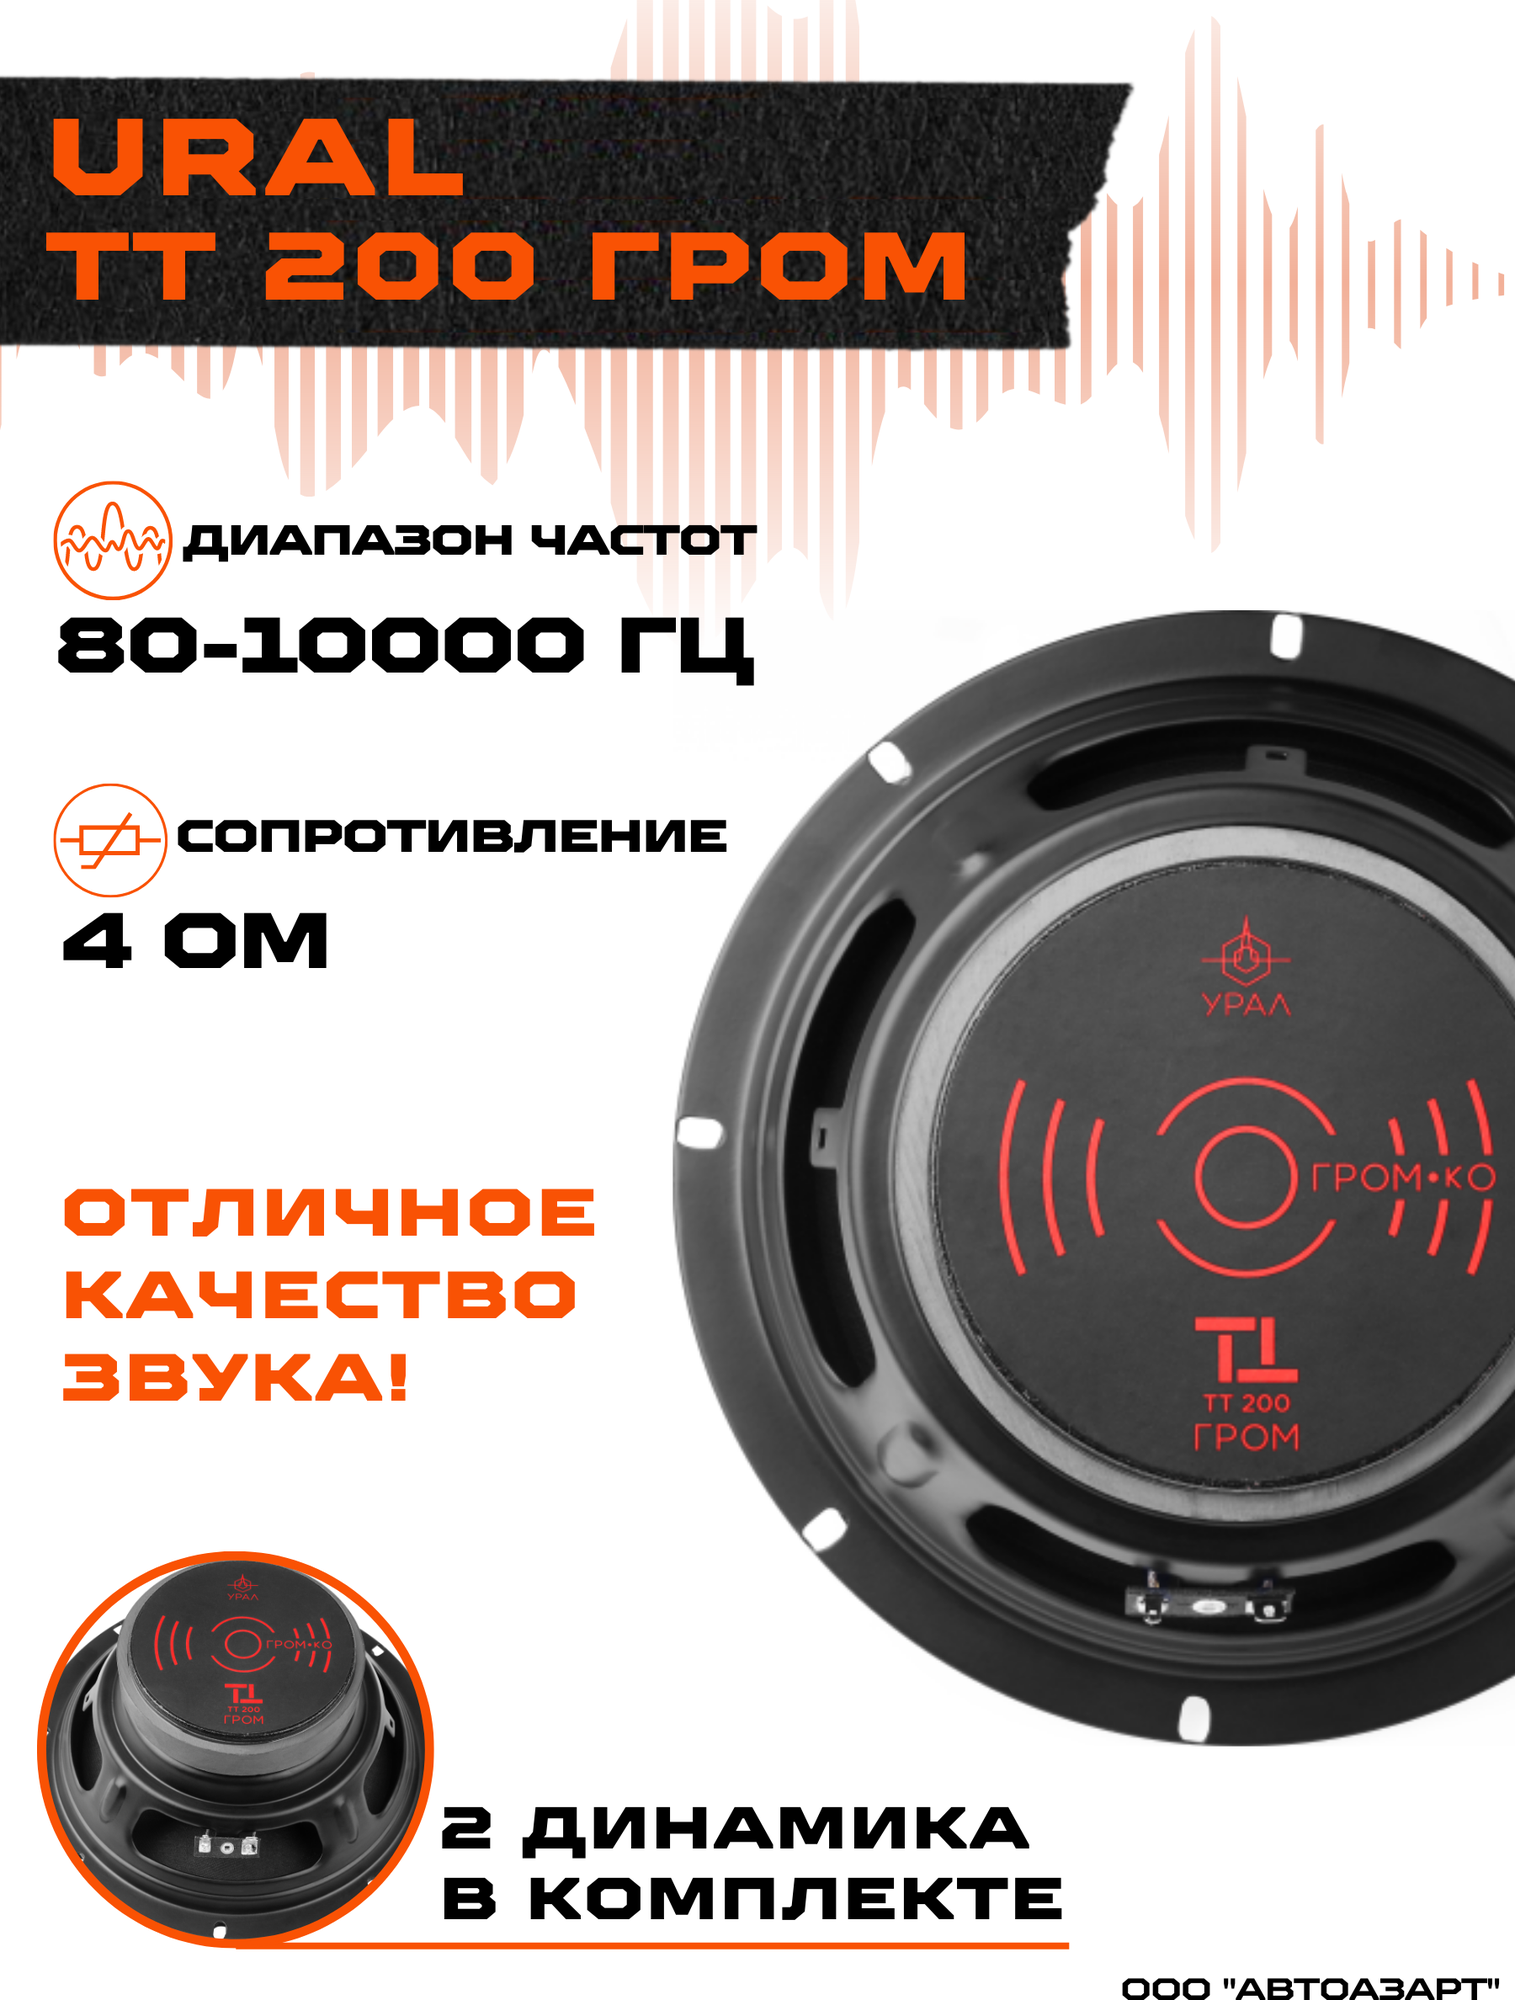 Акустическая система Ural урал ТТ 200 гром